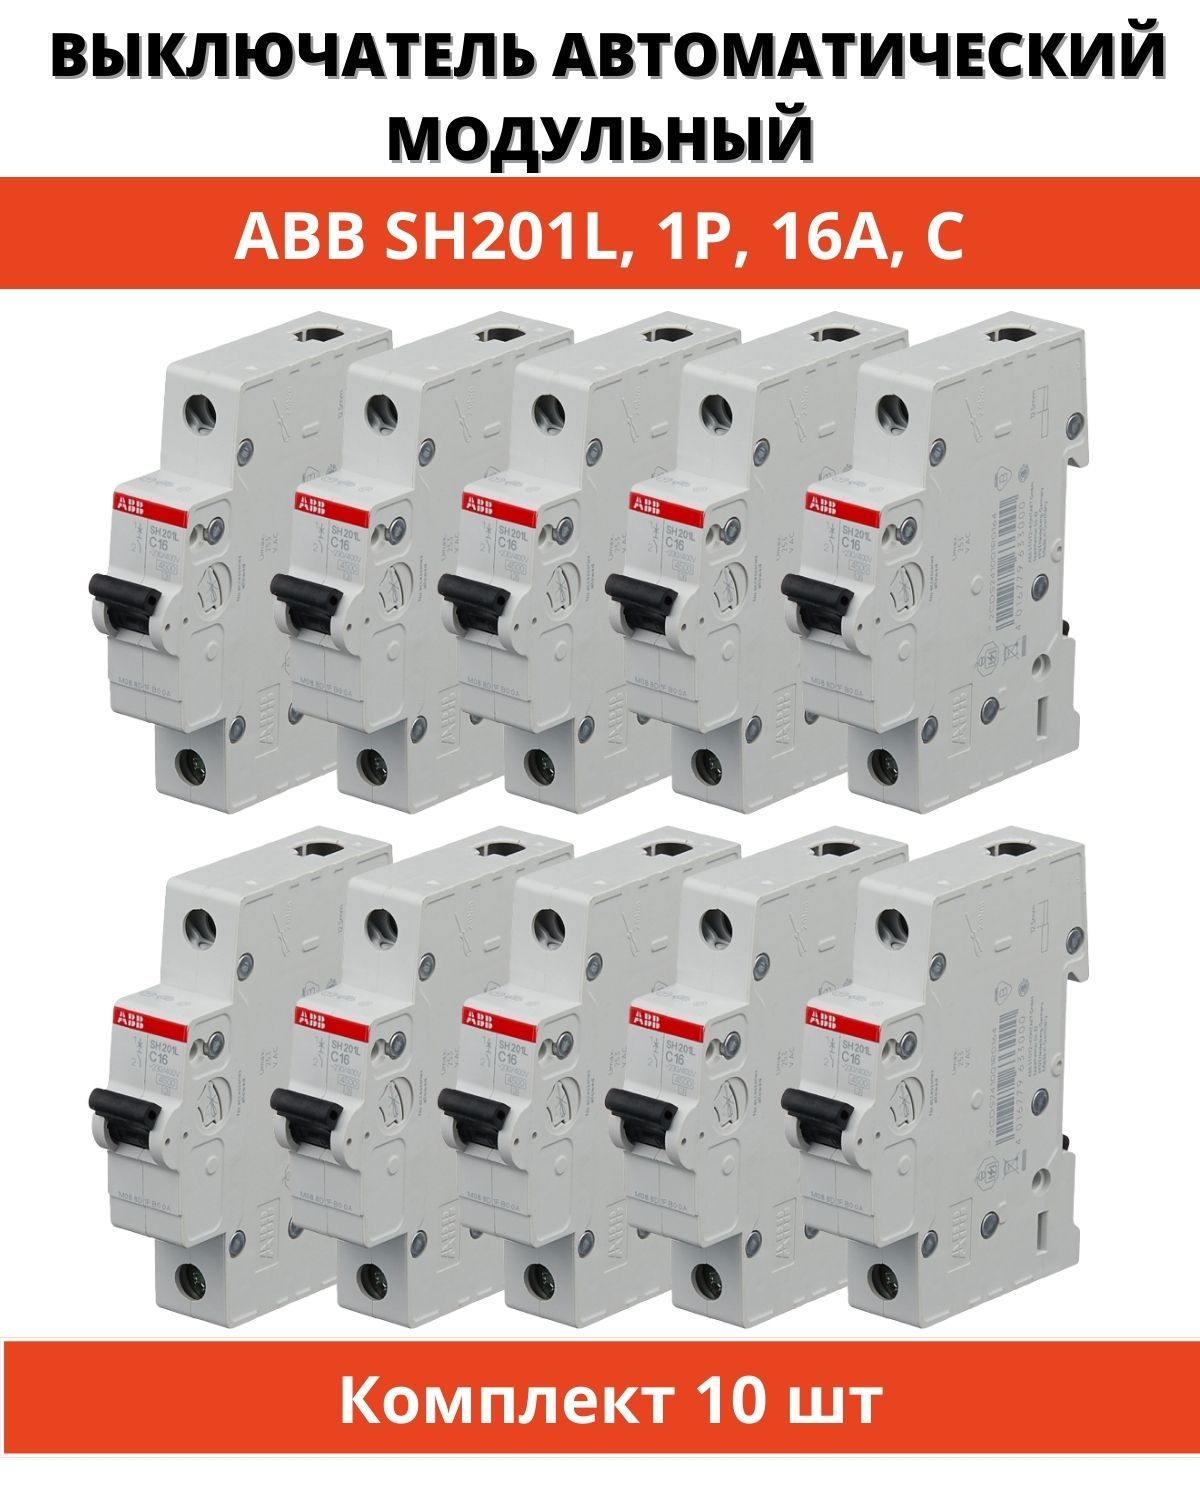 Автоматический выключатель abb 1. ABB 16a sh201l c16 1p. ABB 16a sh201l ABB c16 1p. ABB s201 c16. Разновидность автоматов ABB.